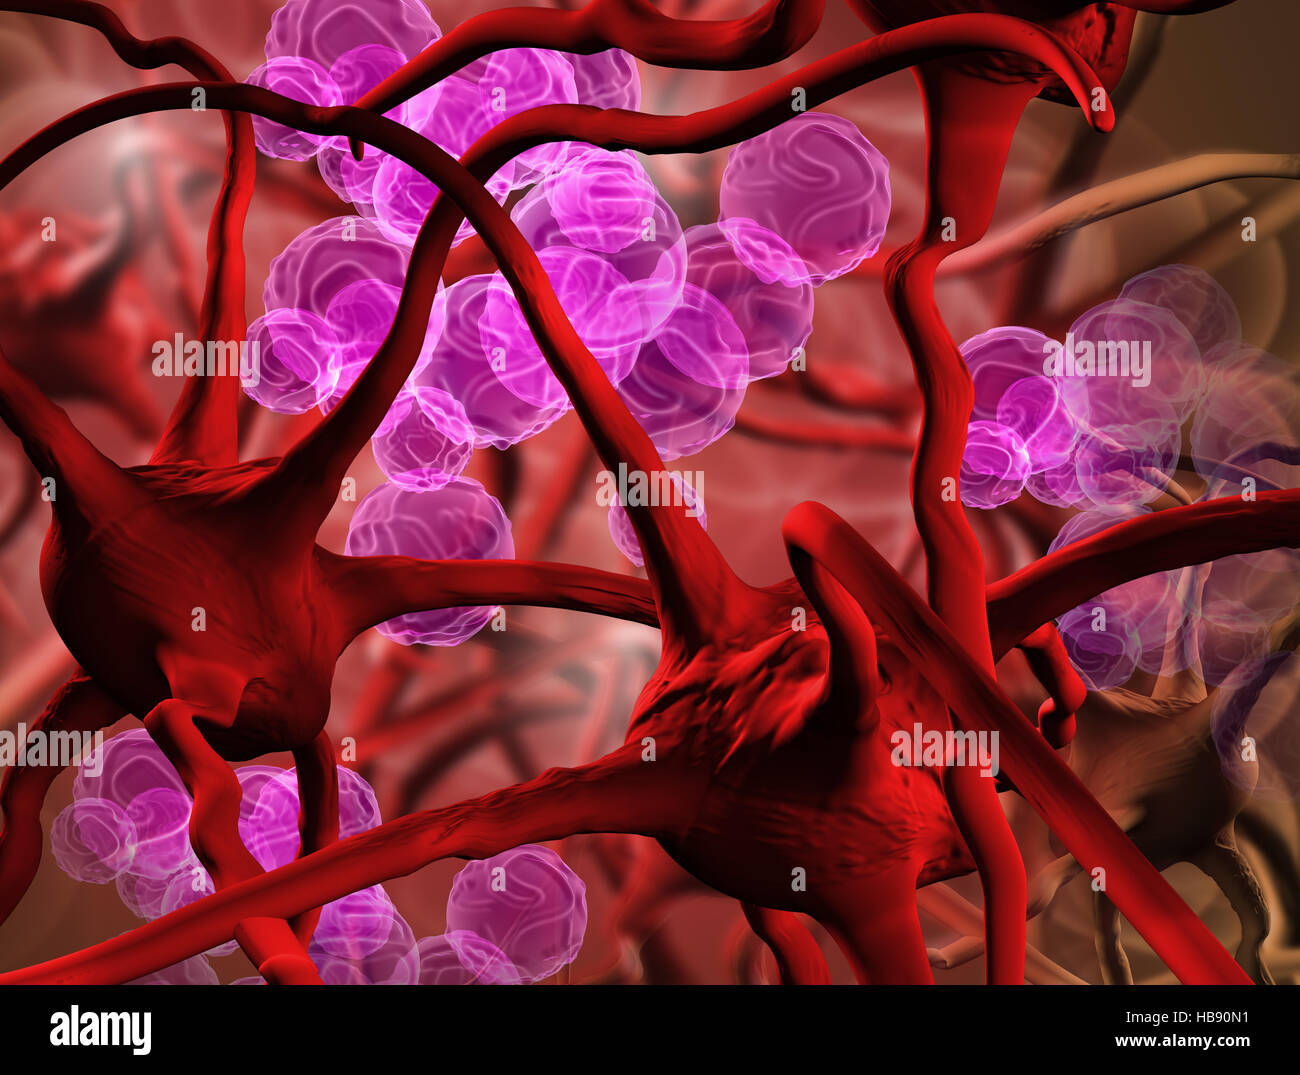 anemia Stock Photo